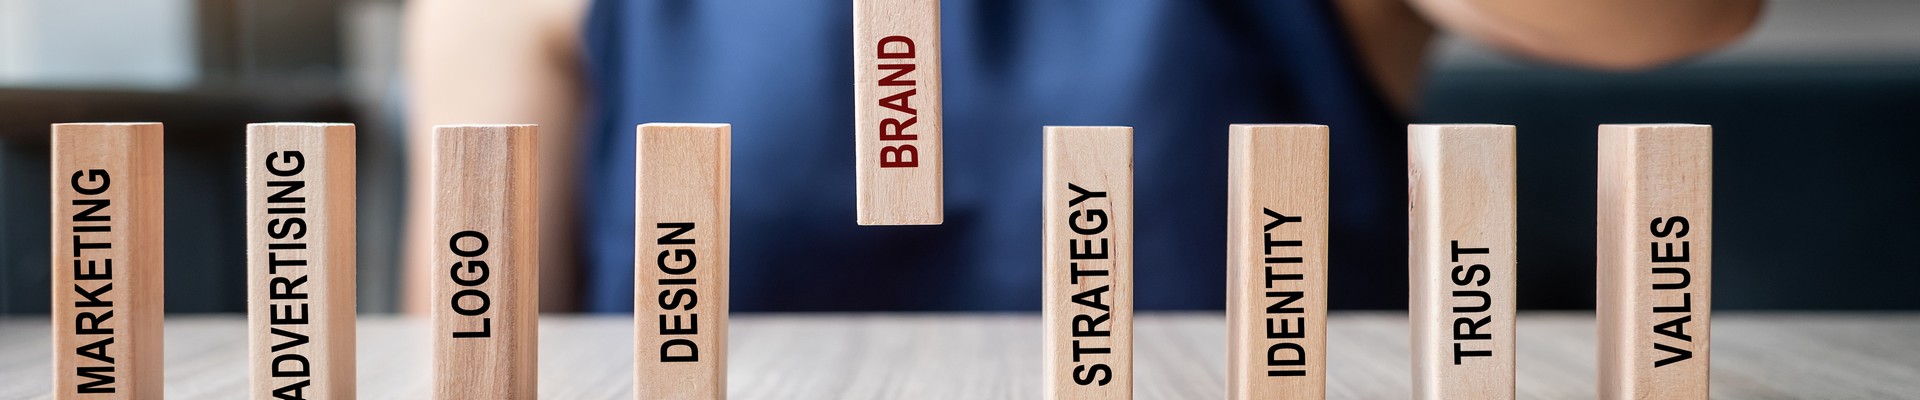 Como desenvolver uma estratégia de branding de sucesso